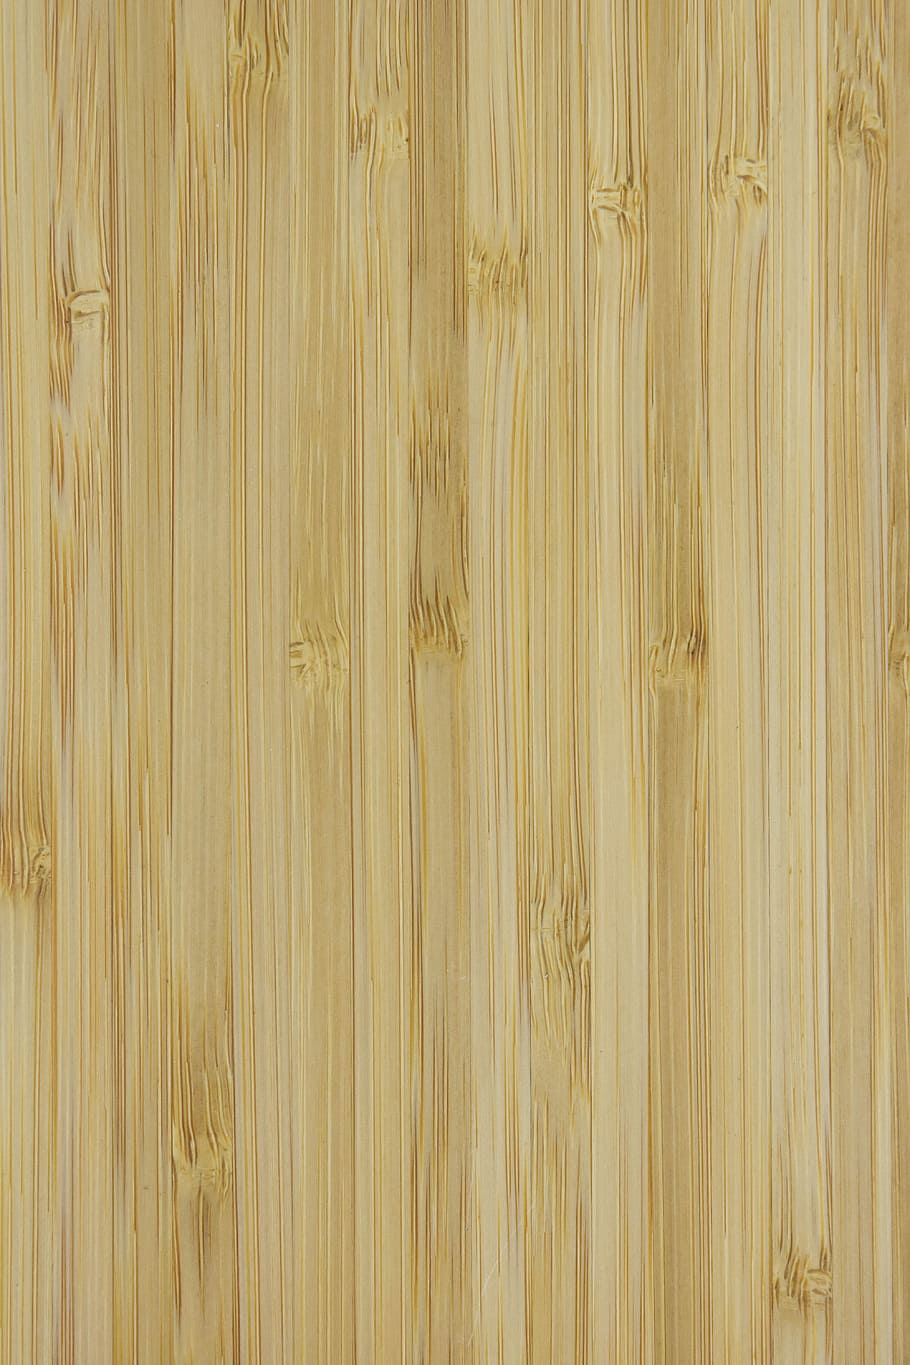 el fondo, madera, retro, textura, tableros, patrón, la estructura del fondo, papel tapiz, textura de madera, panel